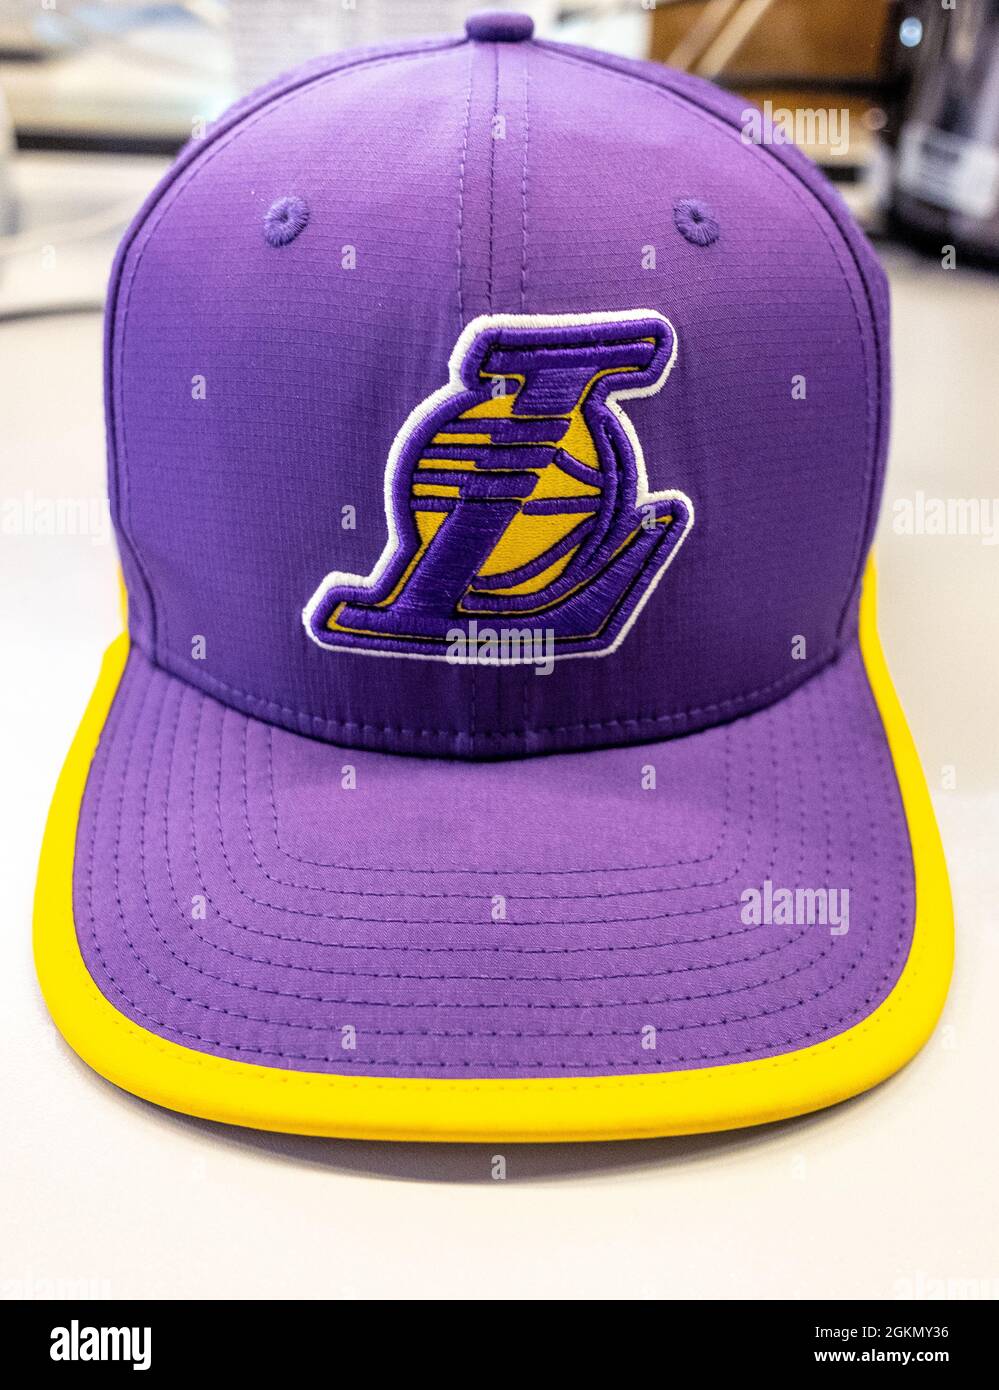 9 septembre 2021 Moscou, Russie. Casquette avec logo de l'équipe de basket-ball  Los Angeles Lakers Photo Stock - Alamy